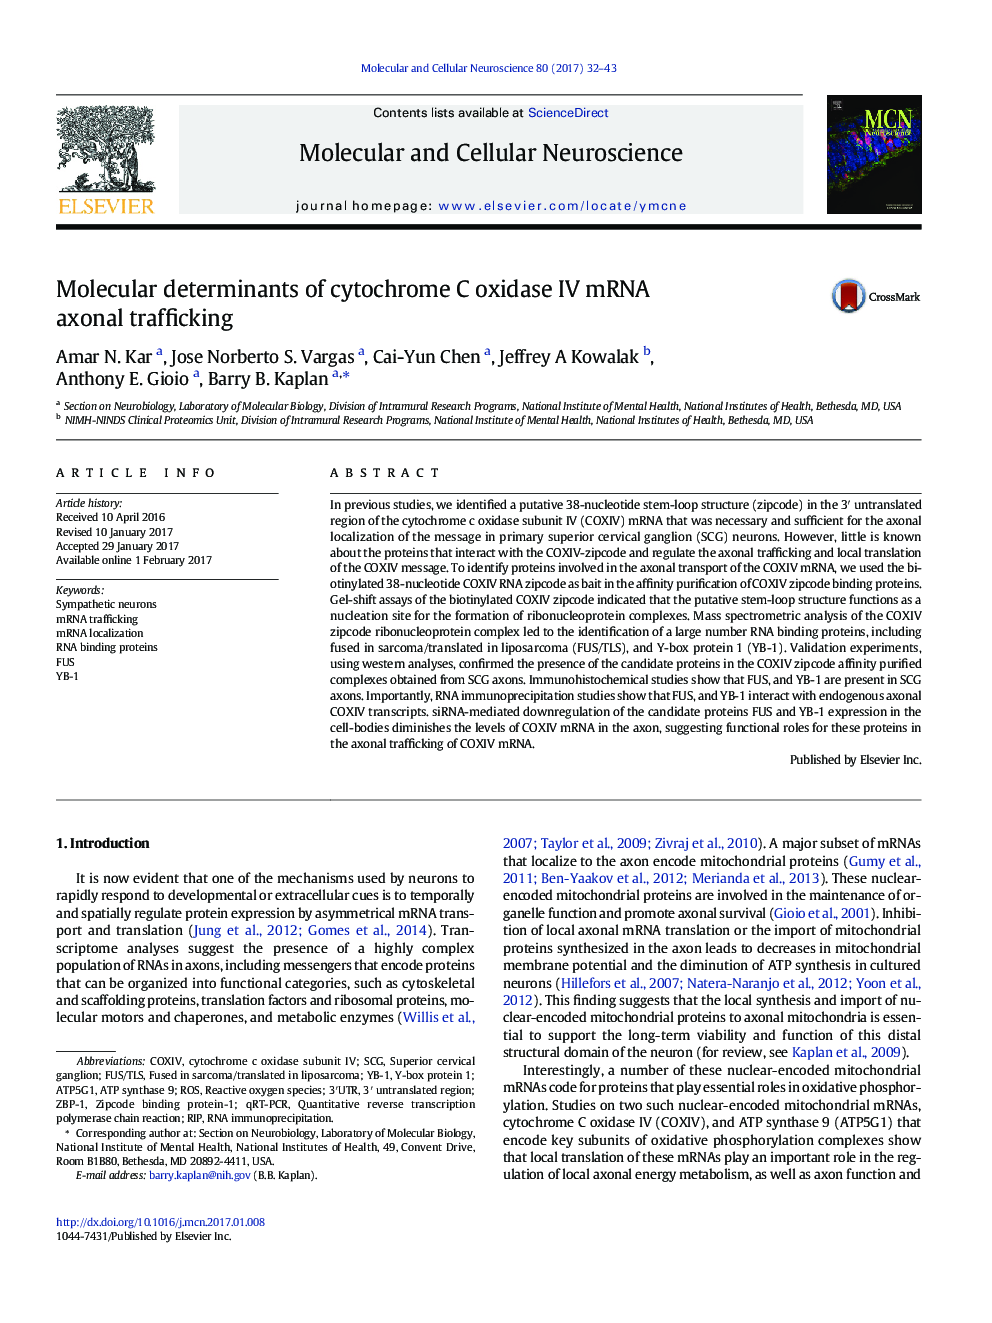 Molecular determinants of cytochrome C oxidase IV mRNA axonal trafficking